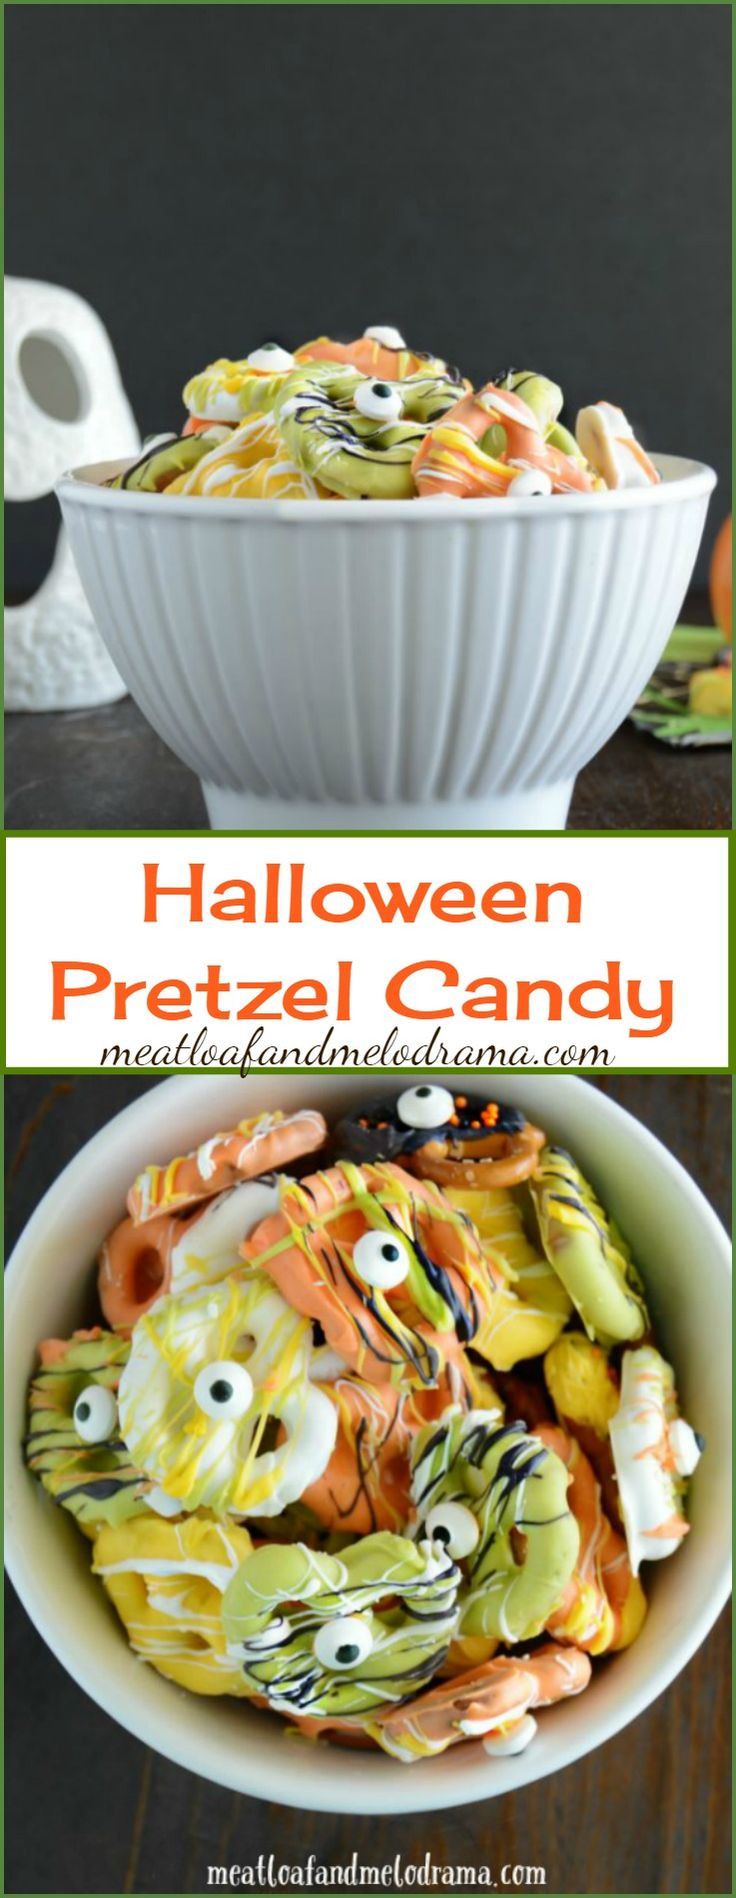 Halloween Pretzels Treats
 Best 25 Halloween pretzels ideas on Pinterest